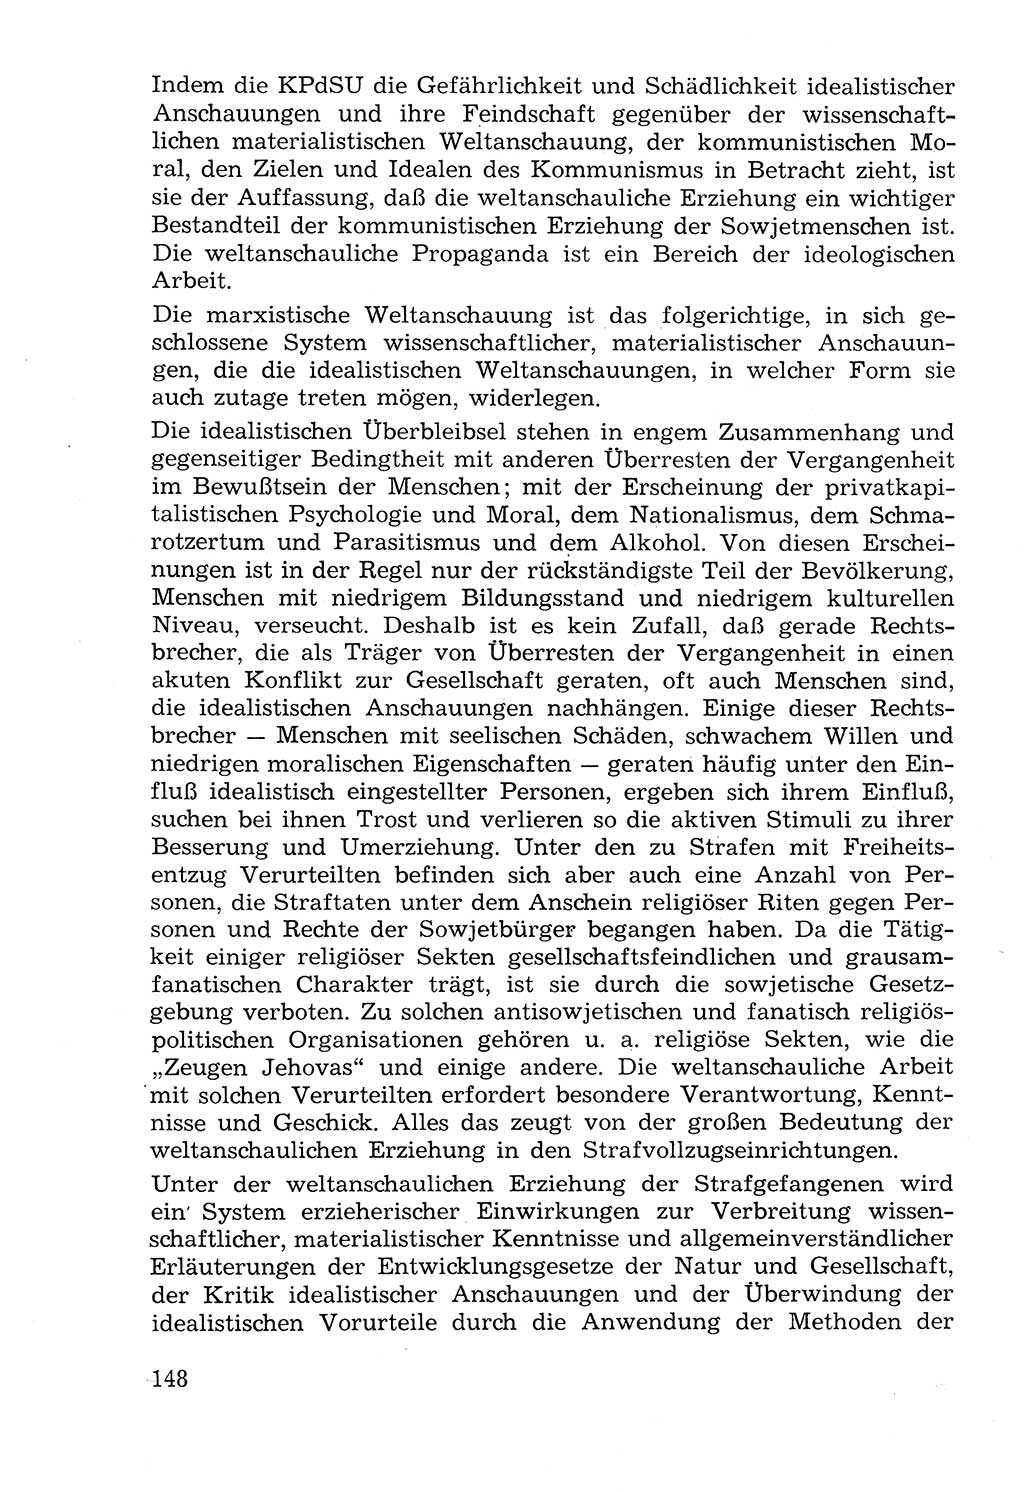 Lehrbuch der Strafvollzugspädagogik [Deutsche Demokratische Republik (DDR)] 1969, Seite 148 (Lb. SV-Pd. DDR 1969, S. 148)